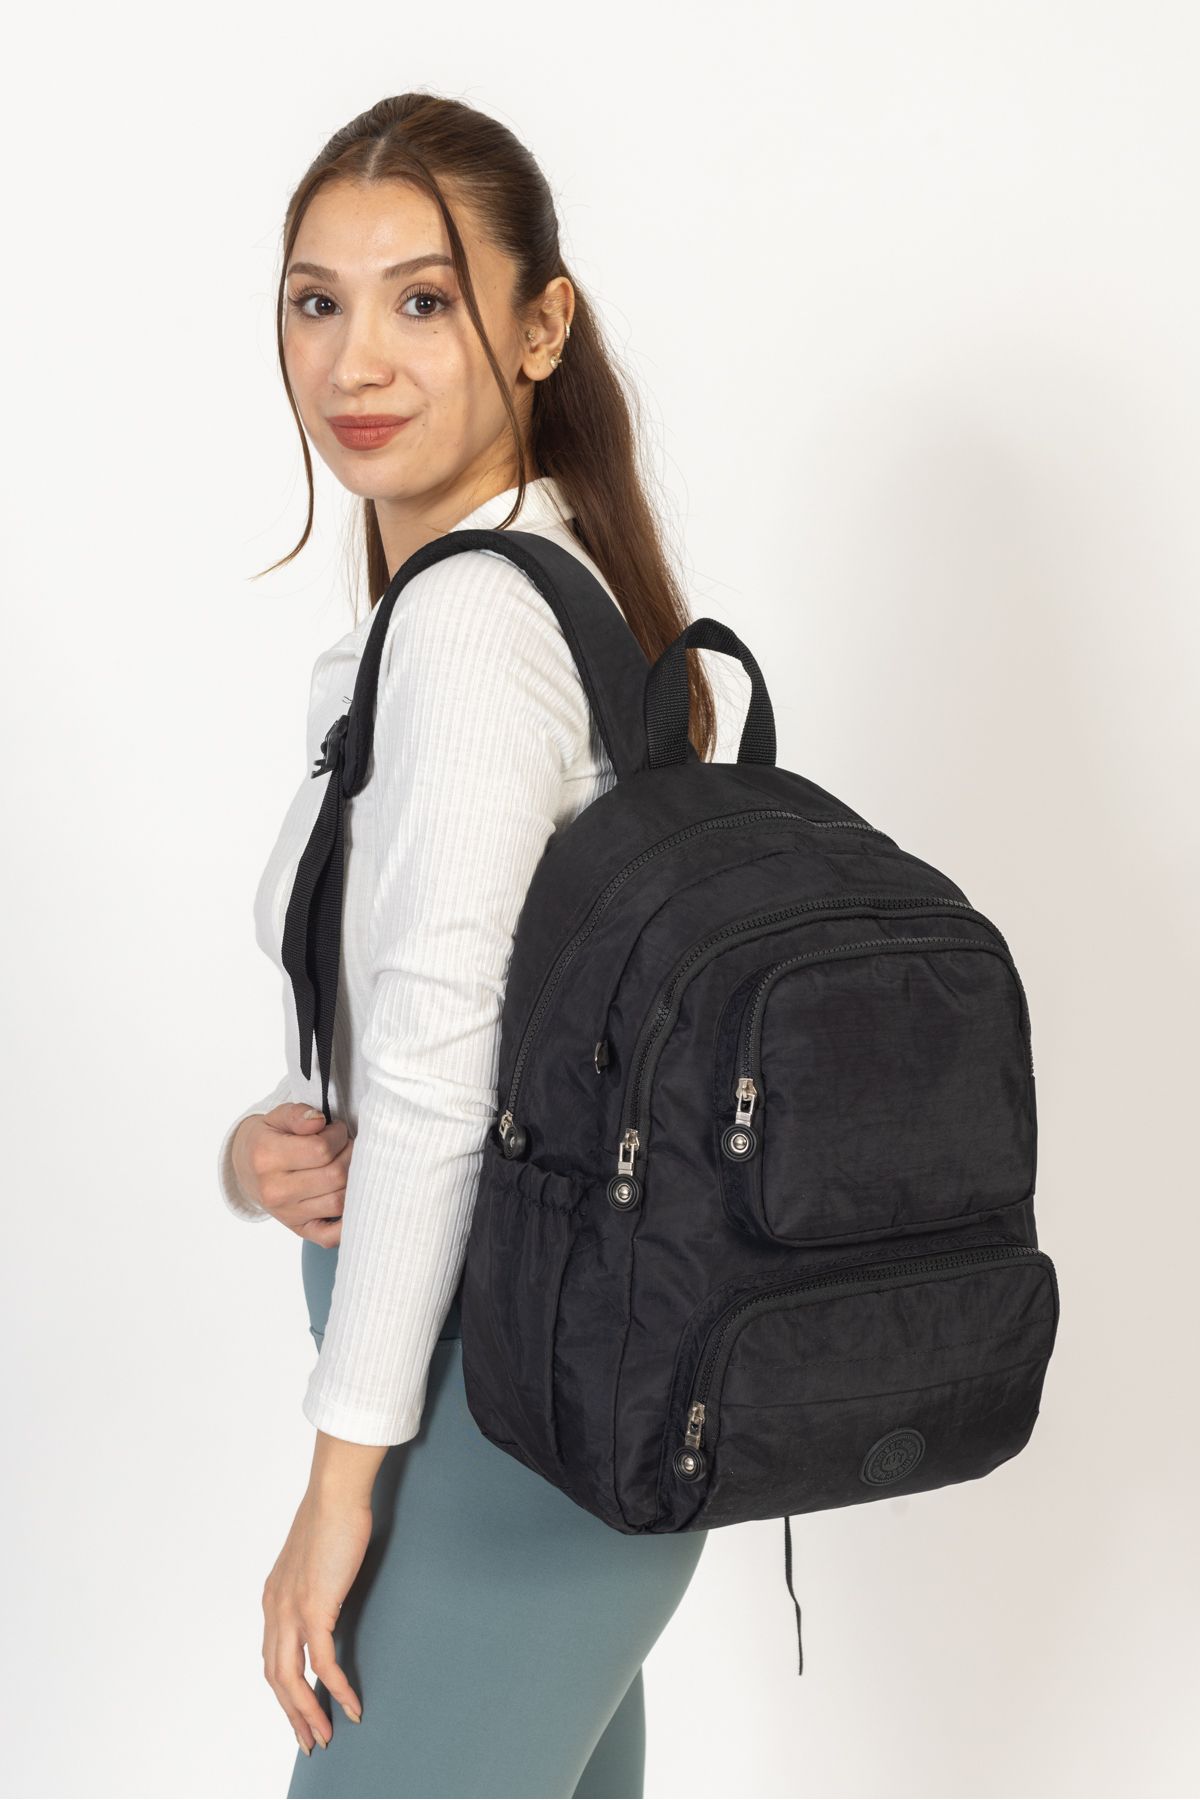 collectionKESH Siyah klinkır sırt çantası okul, laptop ve seyahat çantası su geçirmez kumaş